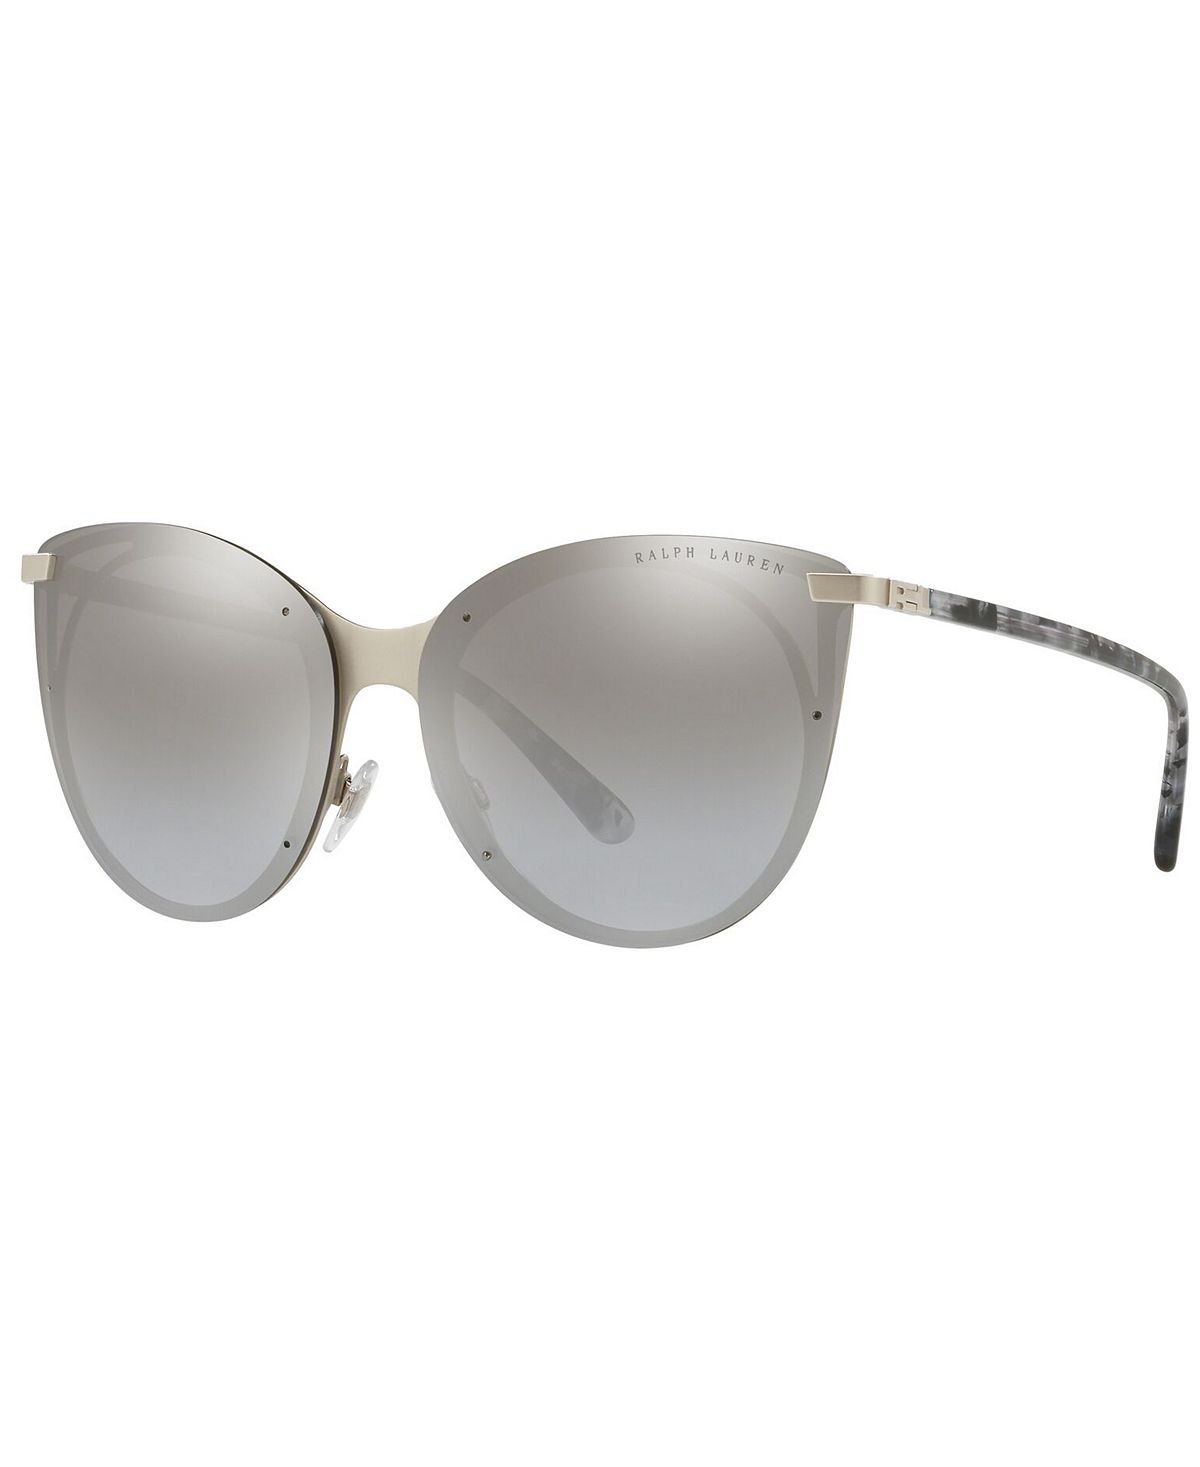 Женские солнцезащитные очки, RL7059 63 Ralph Lauren